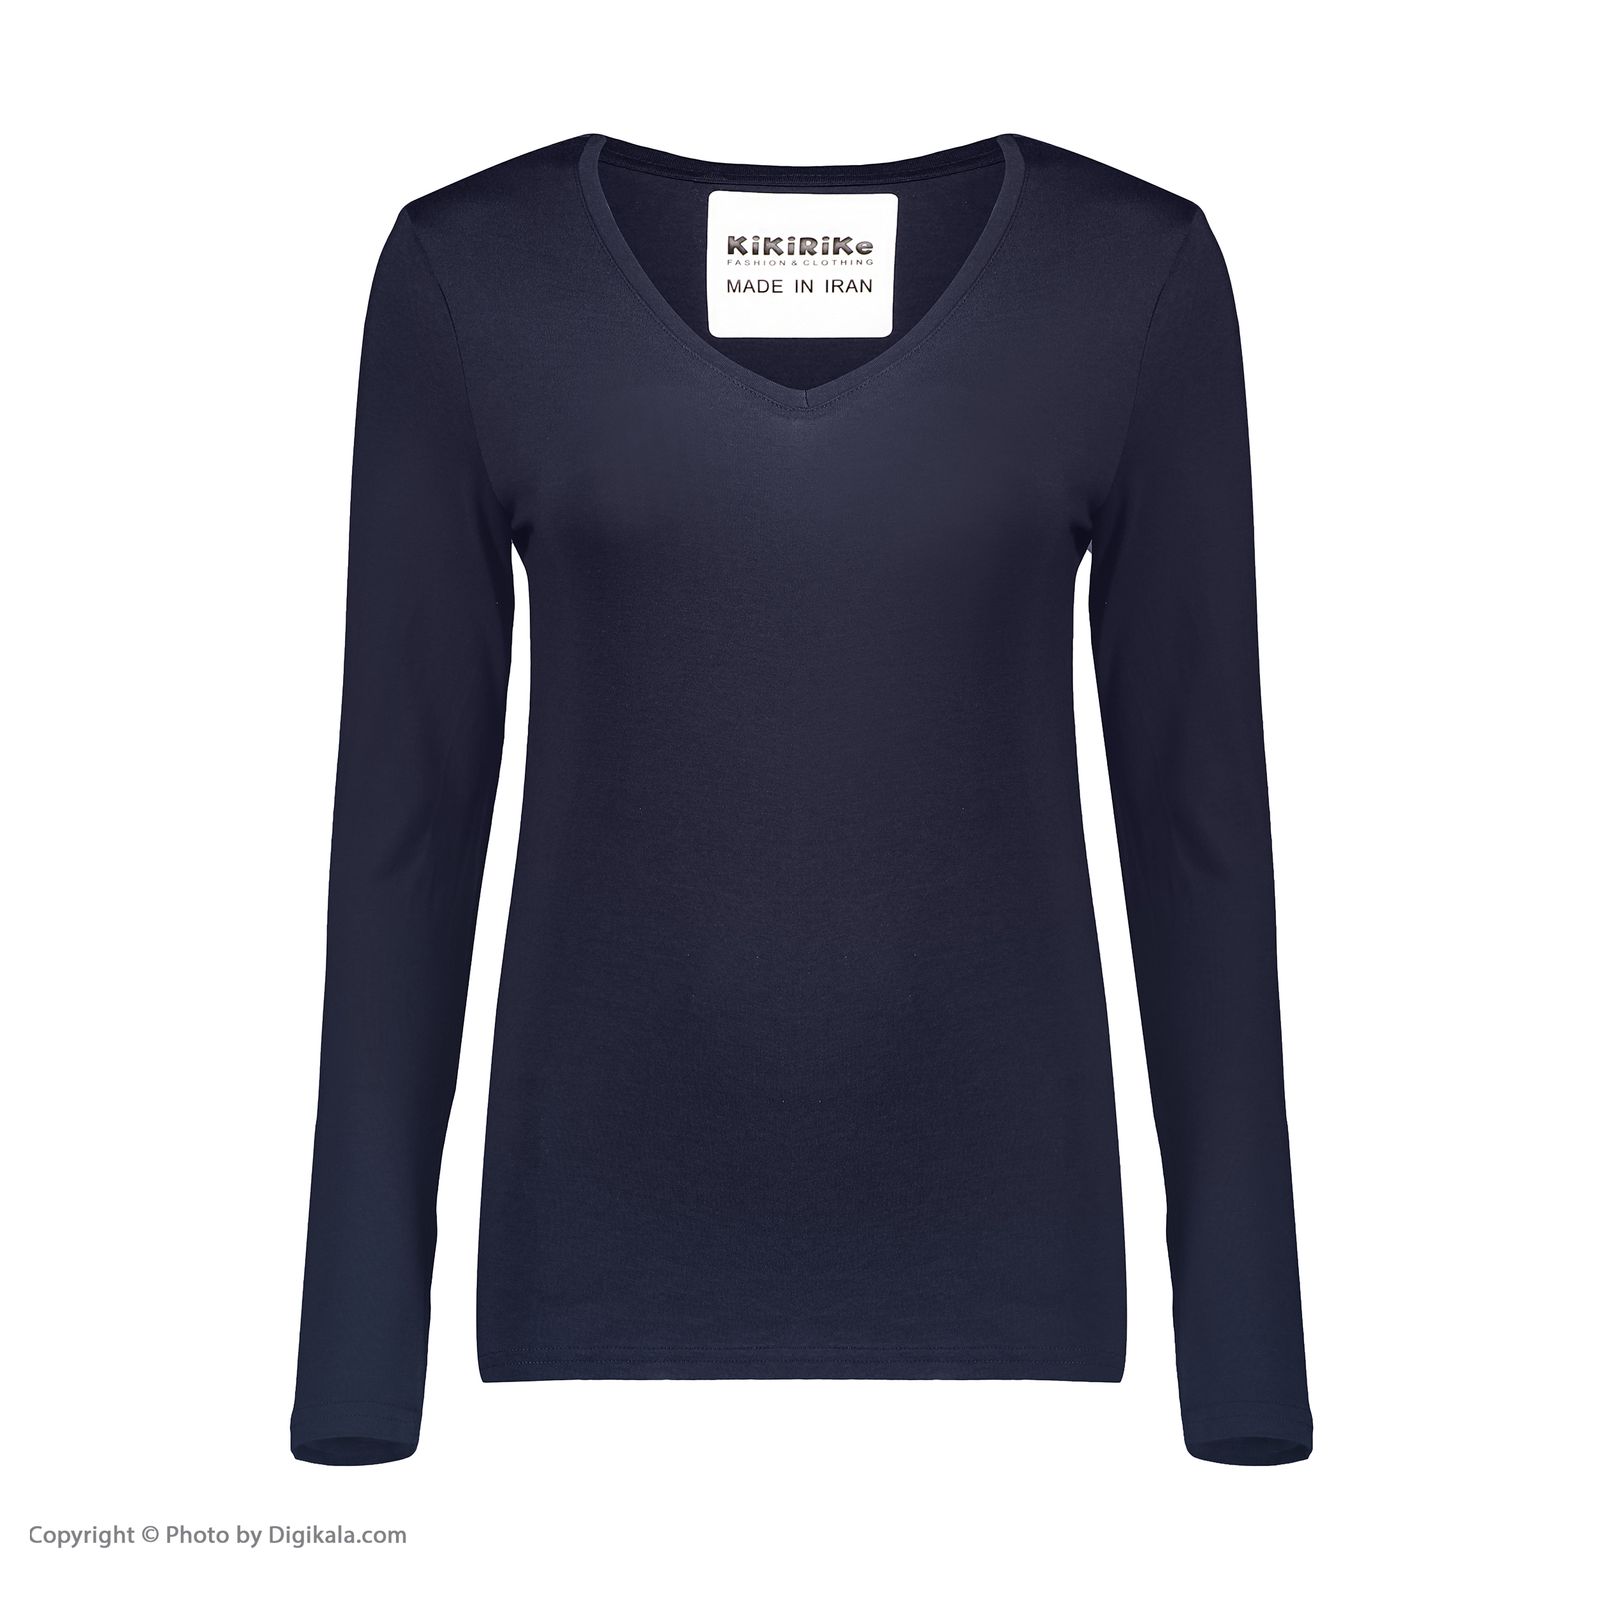 تی شرت زنانه کیکی رایکی مدل BB20155-200 -  - 2